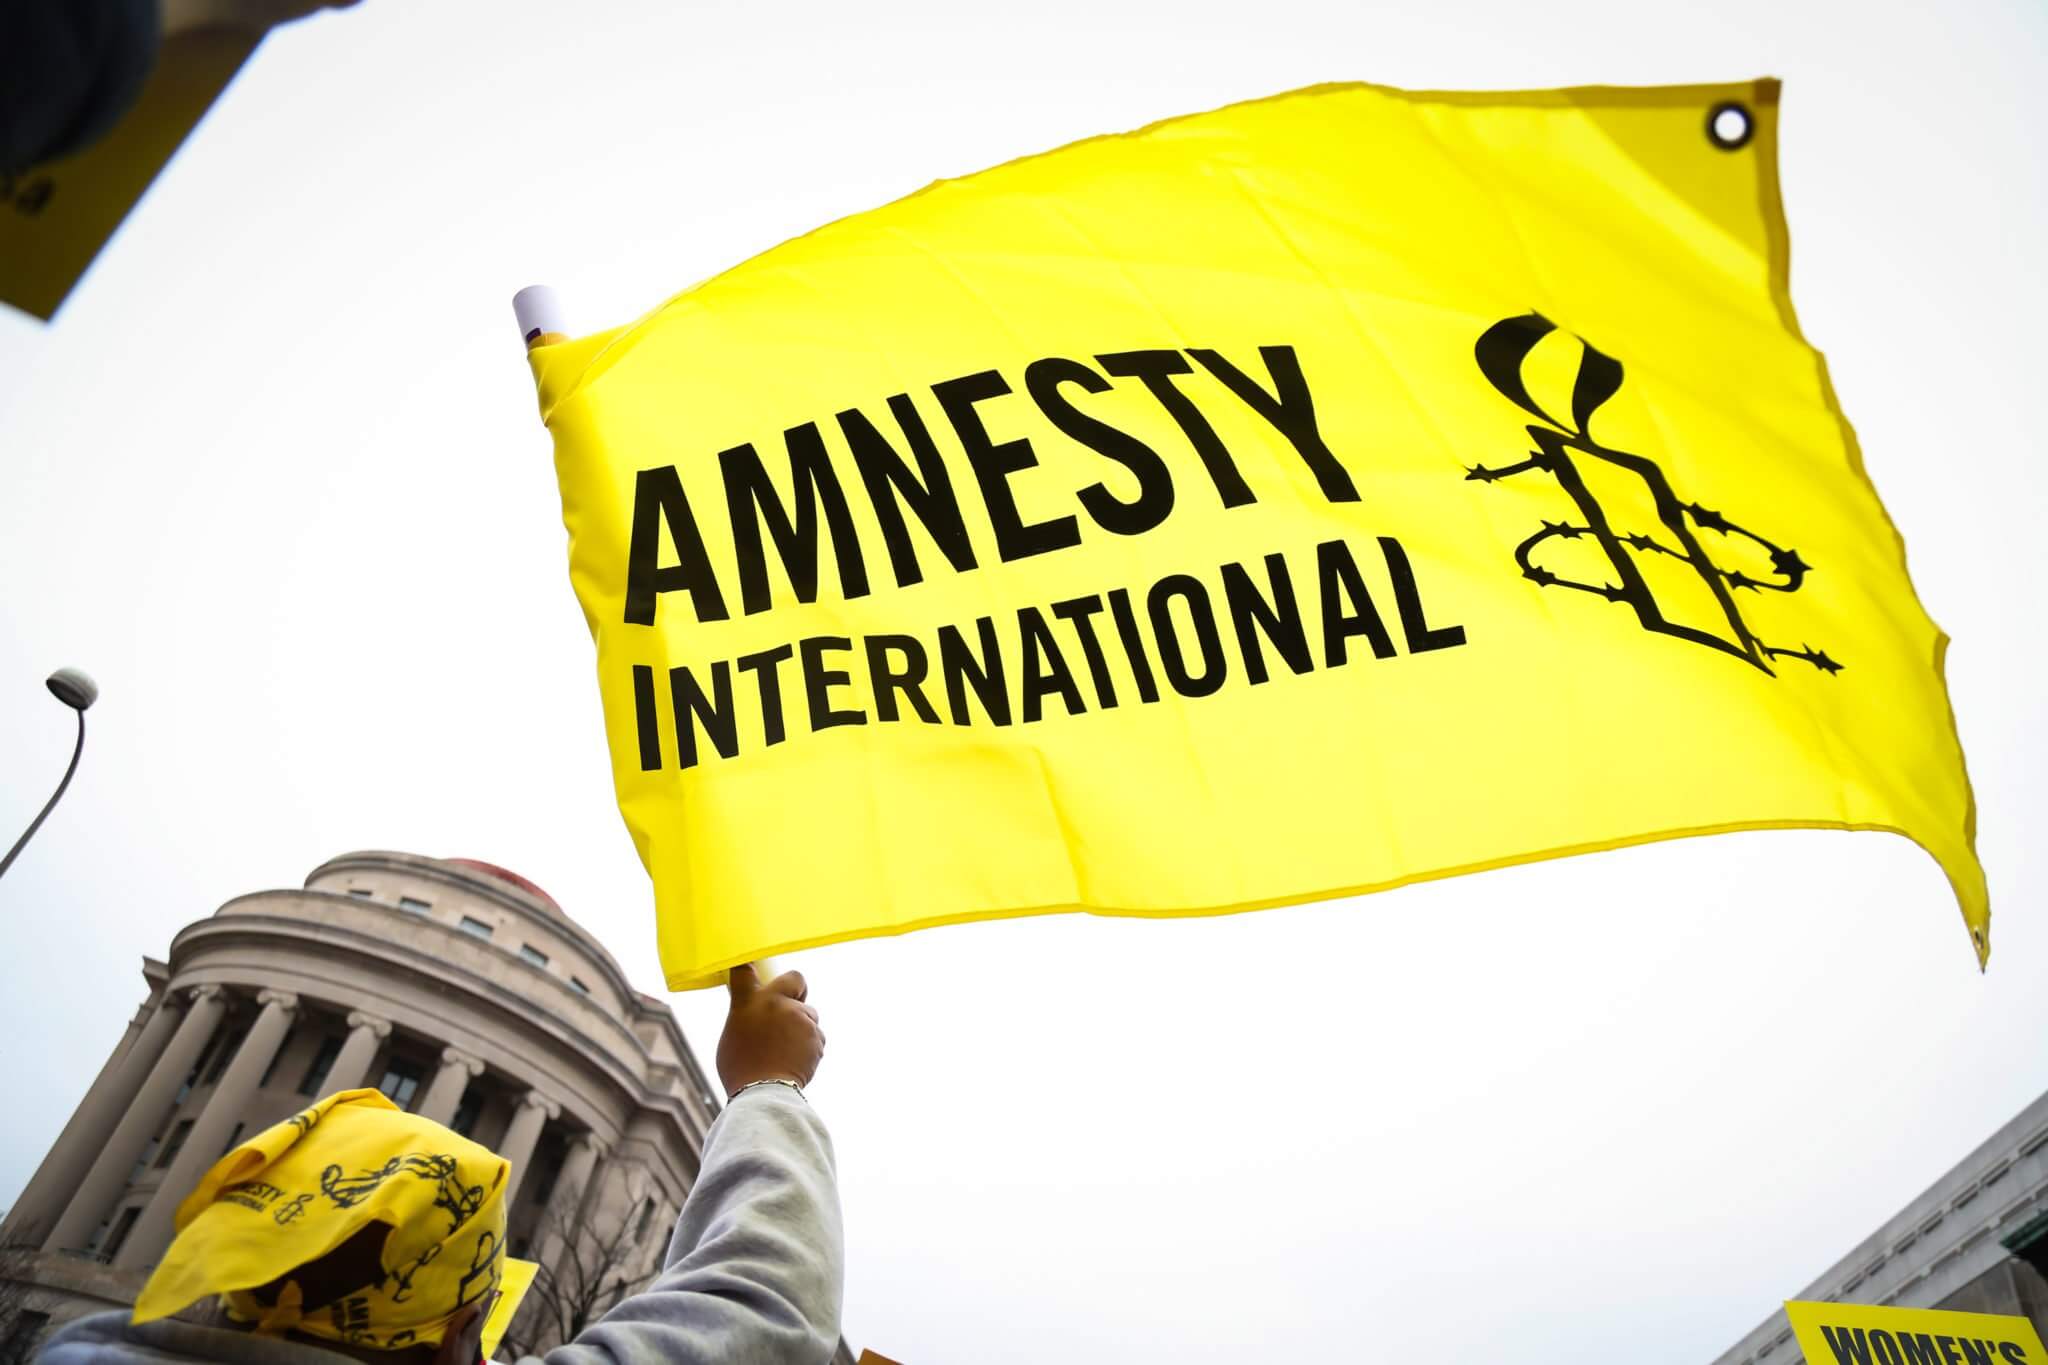 İfade Özgürlüğü Üzerine Bir İnceleme: Uluslararası Af Örgütü